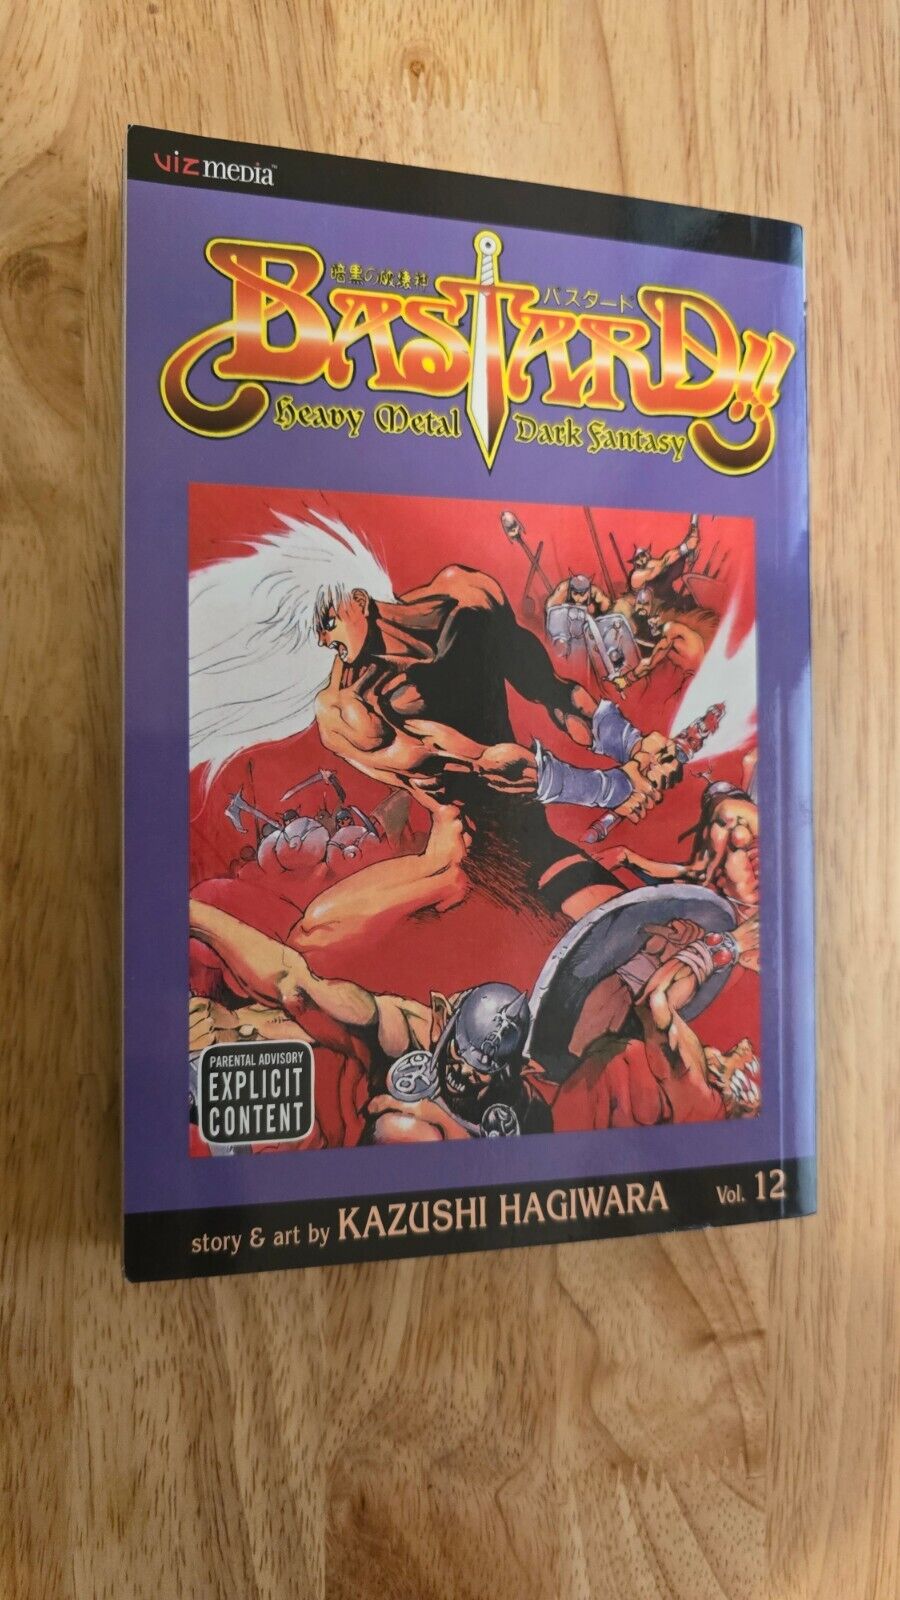 Bastard Volume 12 Manga English Kazushi Hagiwara Heavy Metal Dark Fantasy Vol 12